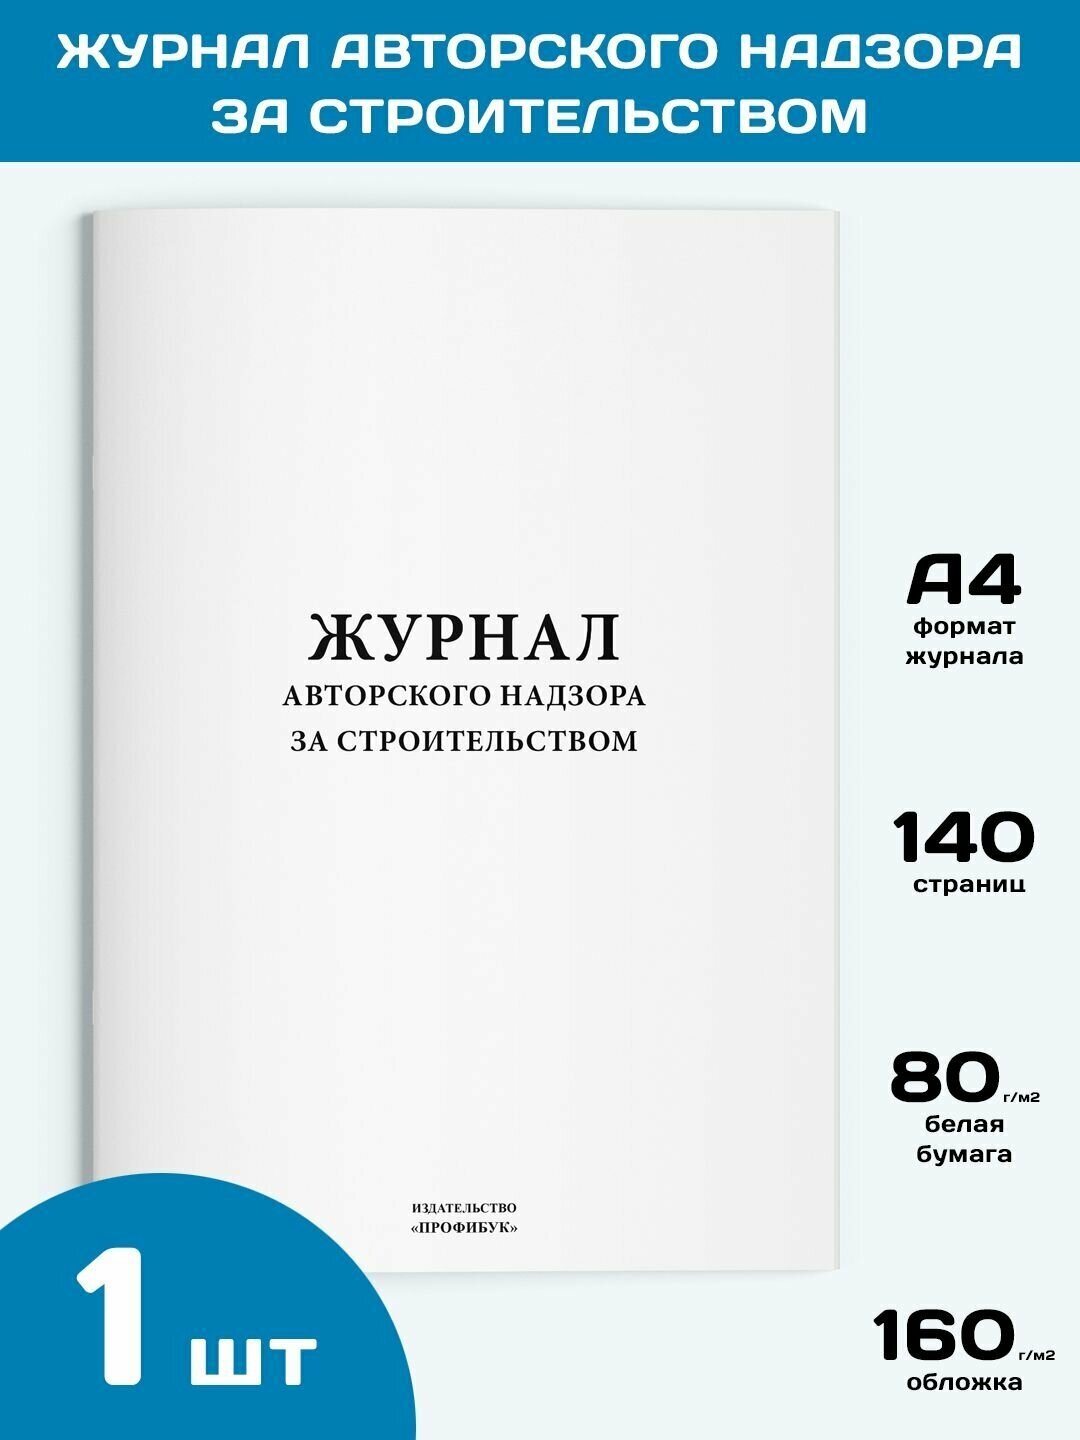 Журнал авторского надзора за строительством, 1 шт, 140 стр.